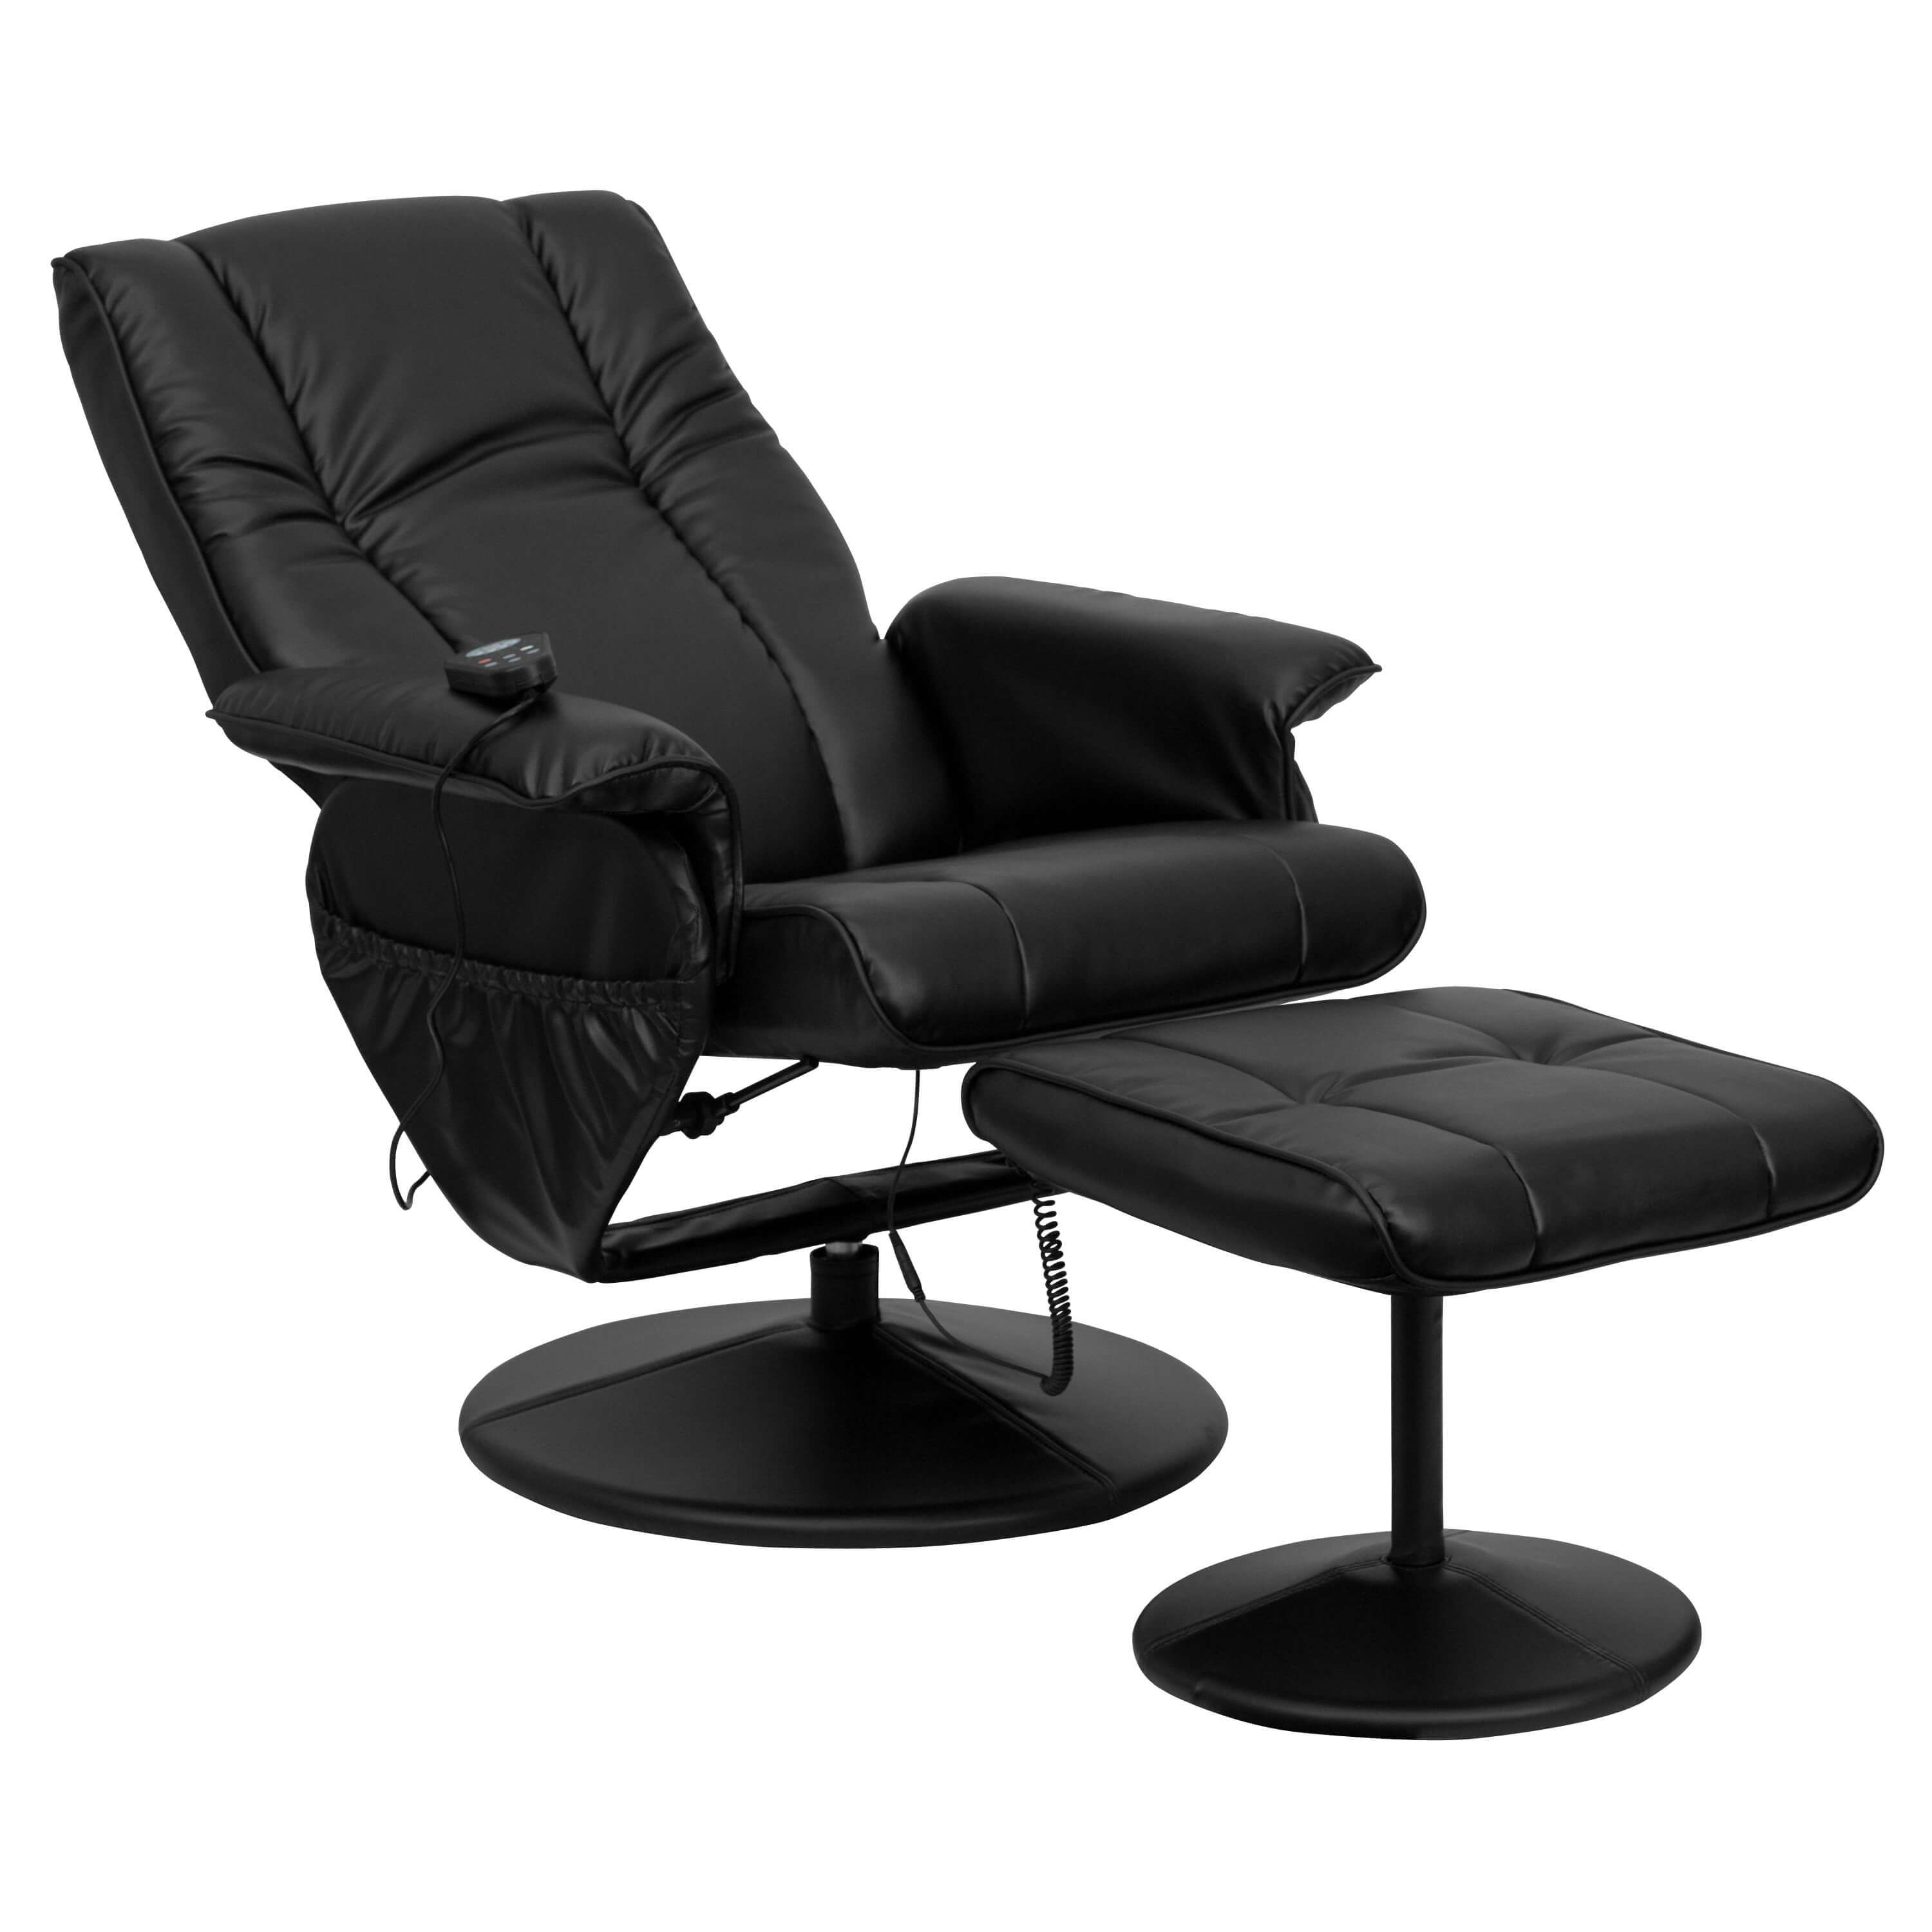 Recliner massage chair reclined view